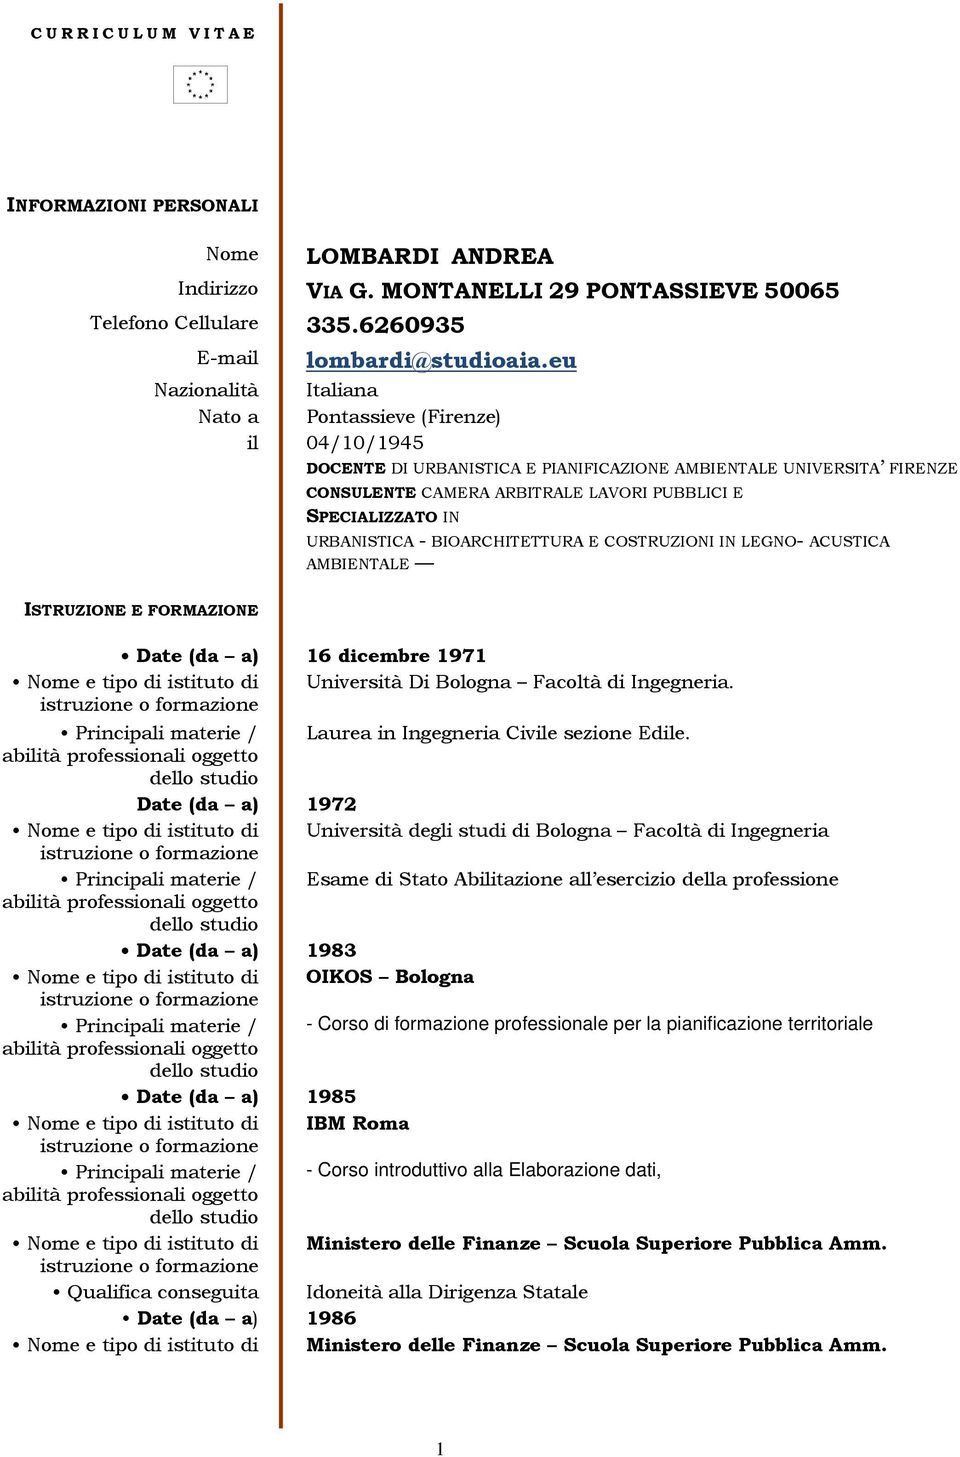 URBANISTICA - BIOARCHITETTURA E COSTRUZIONI IN LEGNO- ACUSTICA AMBIENTALE ISTRUZIONE E FORMAZIONE Date (da a) 16 dicembre 1971 Nome e tipo di istituto di Università Di Bologna Facoltà di Ingegneria.